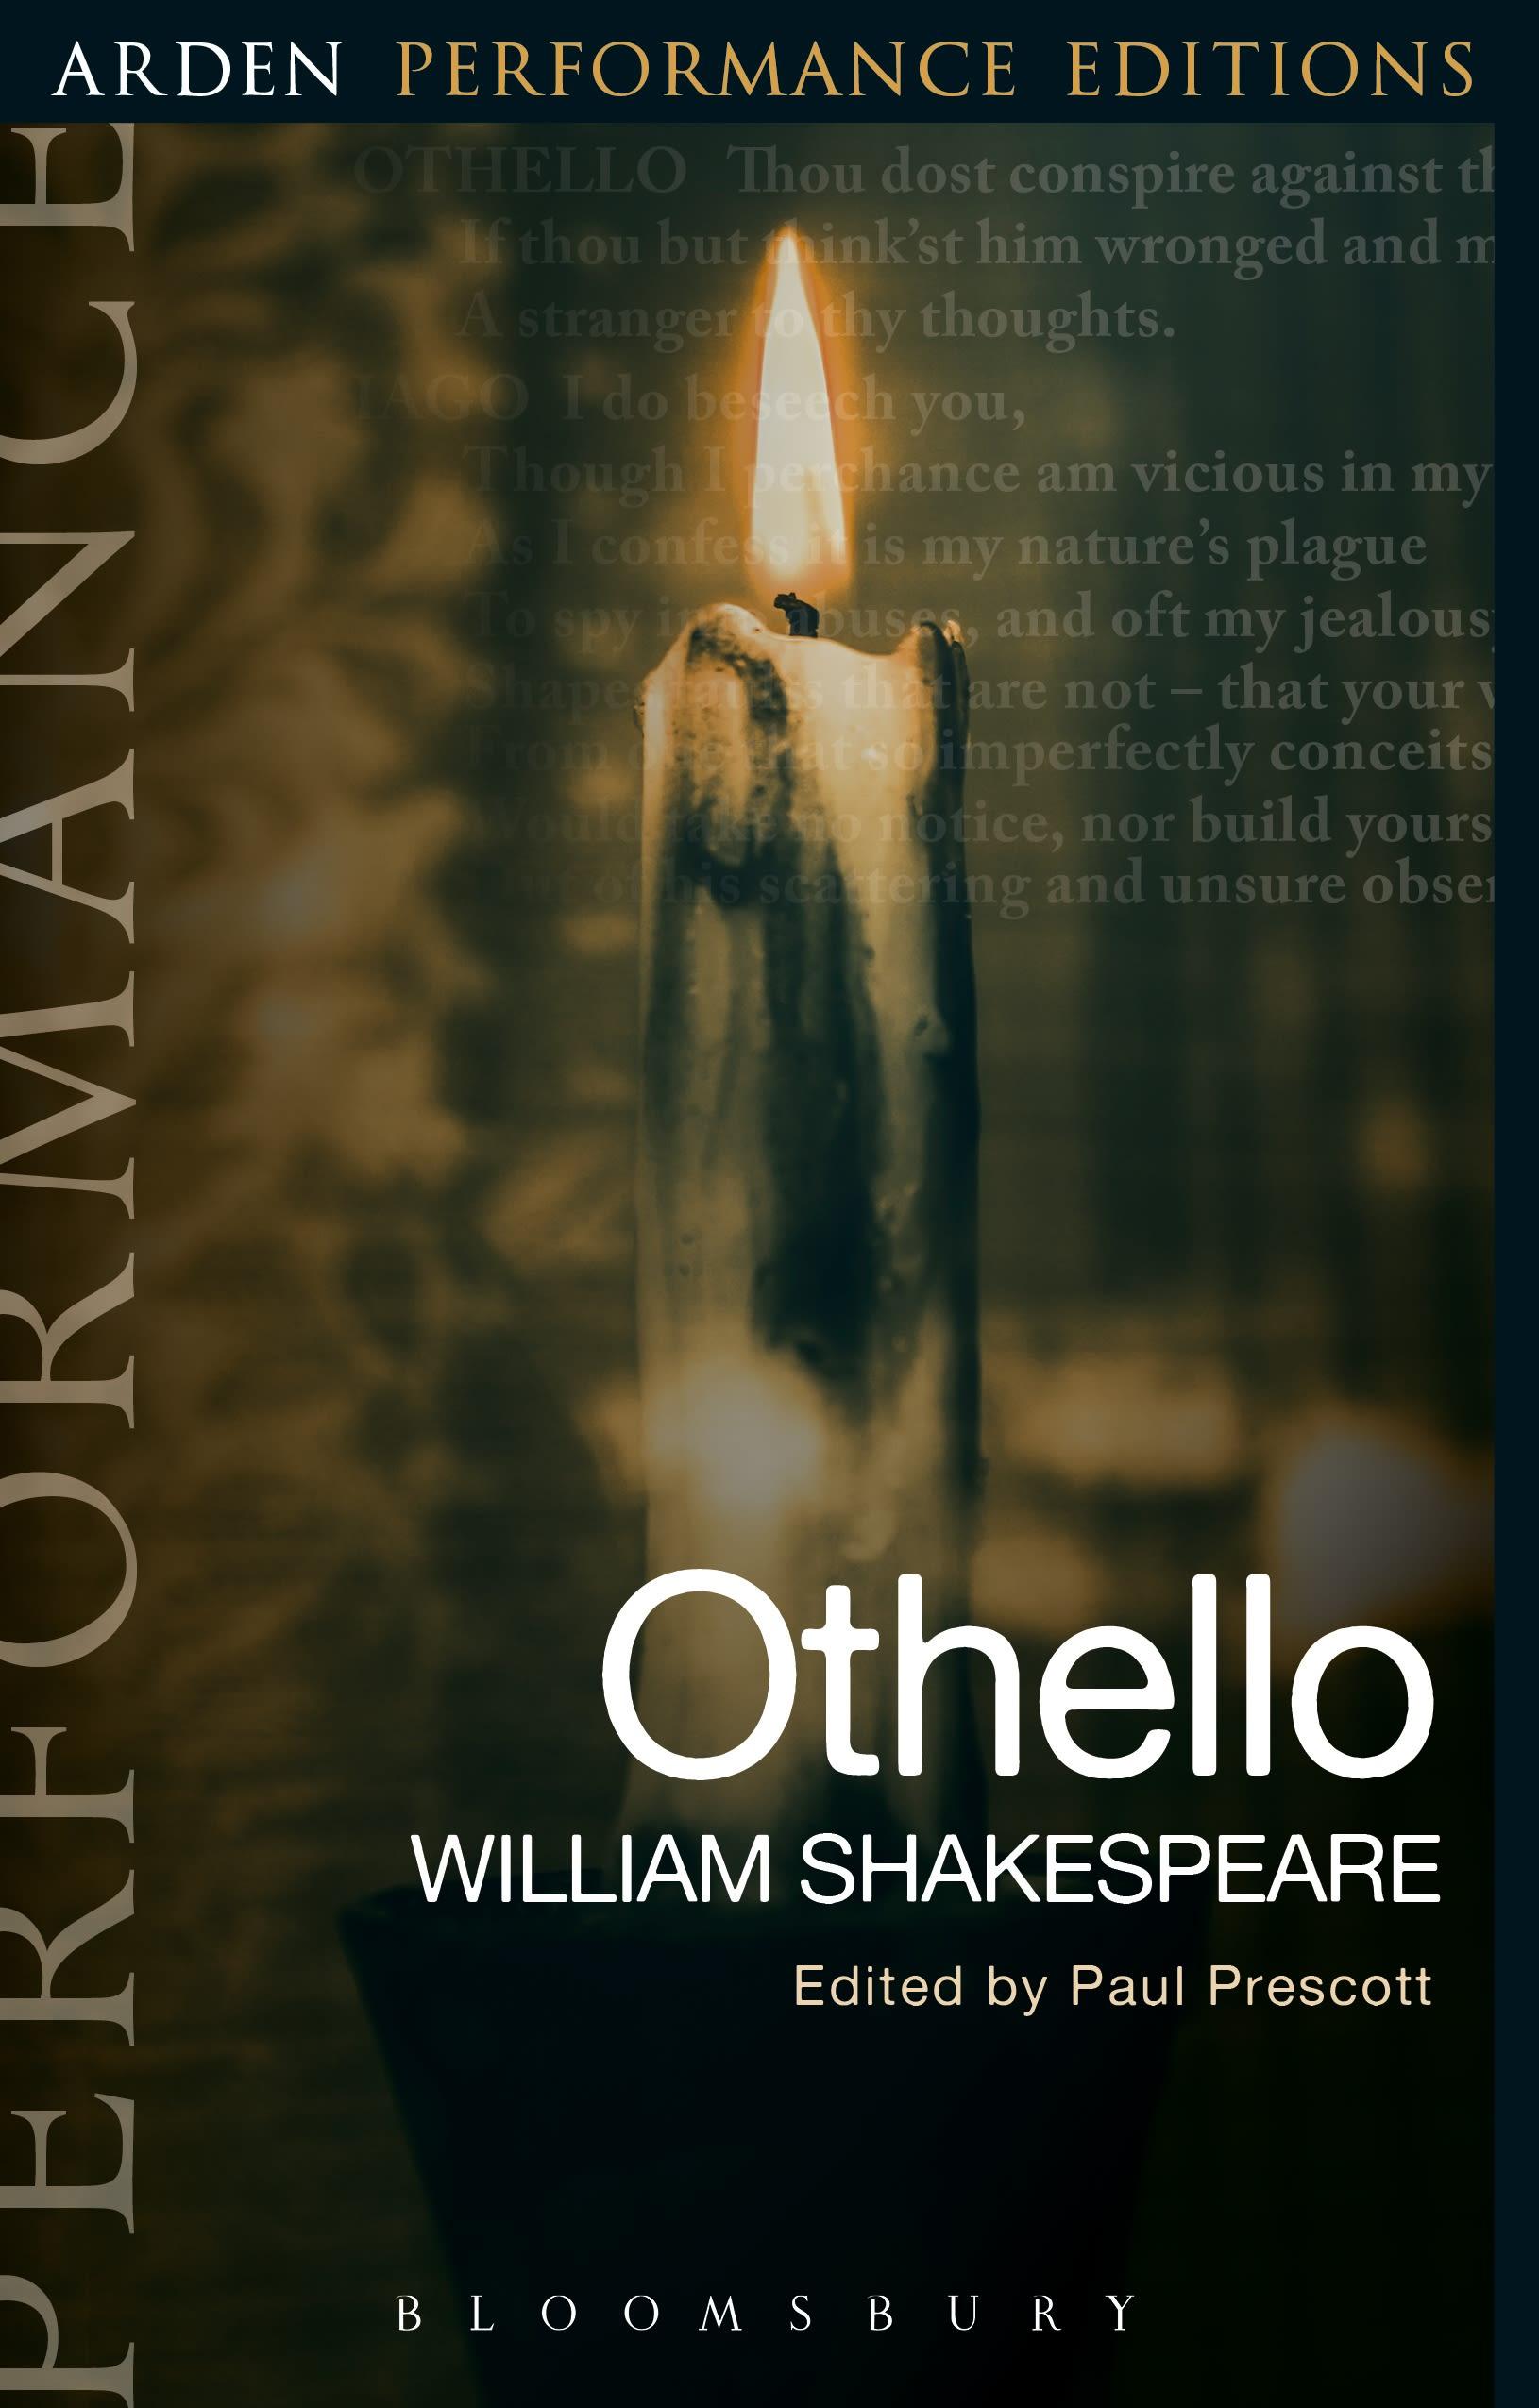 Othello: Arden Performance Editions / William Shakespeare / Taschenbuch / Arden Performance Editions / Kartoniert / Broschiert / Englisch / 2018 / Bloomsbury Academic / EAN 9781474272346 - Shakespeare, William